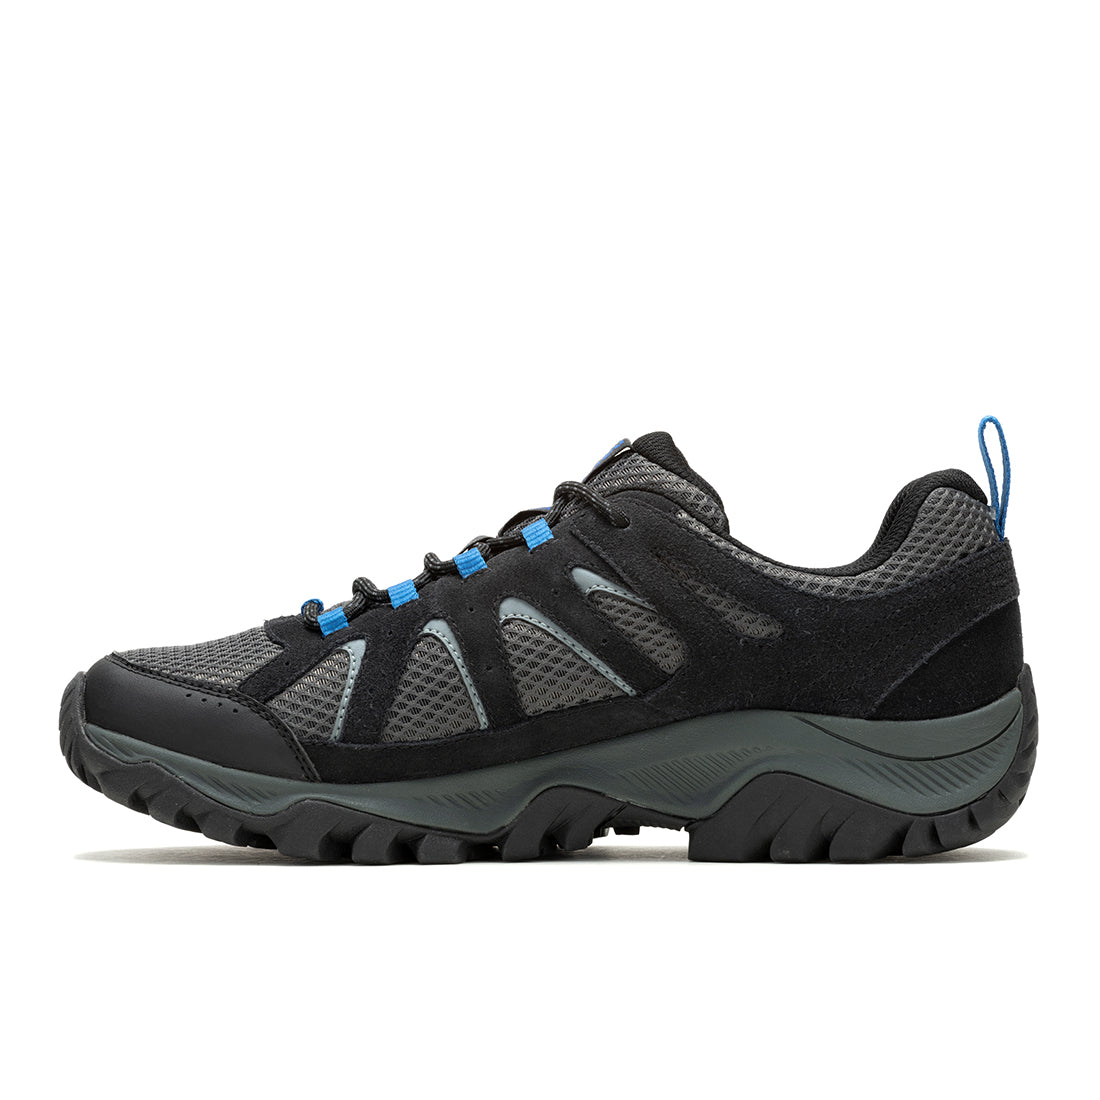 Oakcreek Waterproof-Black/Blue Mens Hiking Shoes